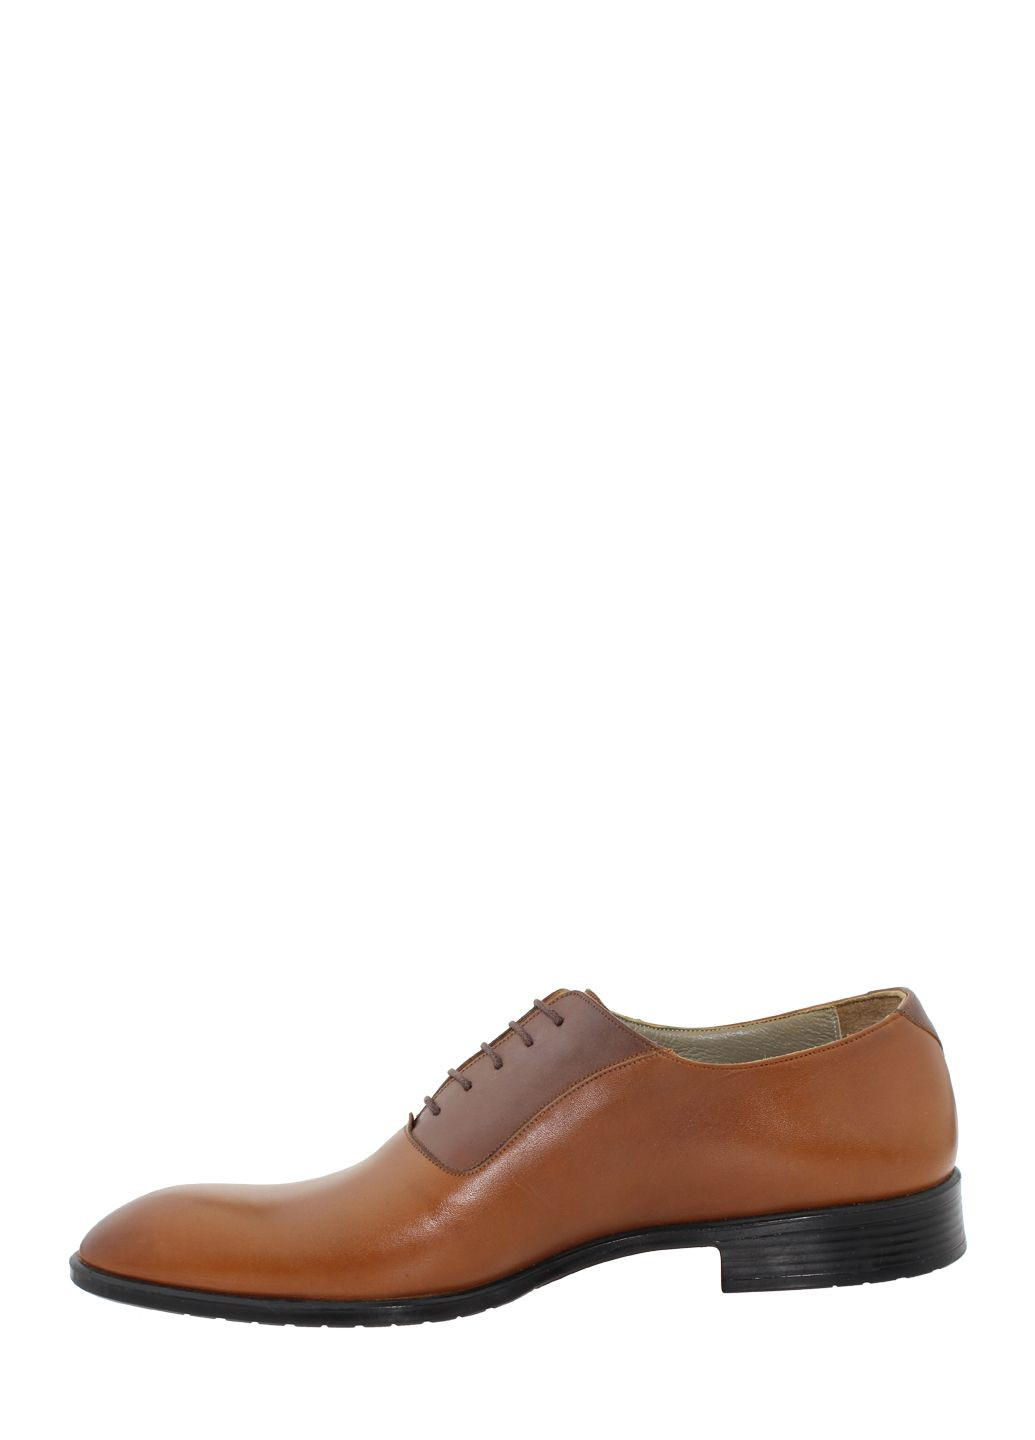 Светло-коричневые туфли 643-2 светло-коричневый Rabano